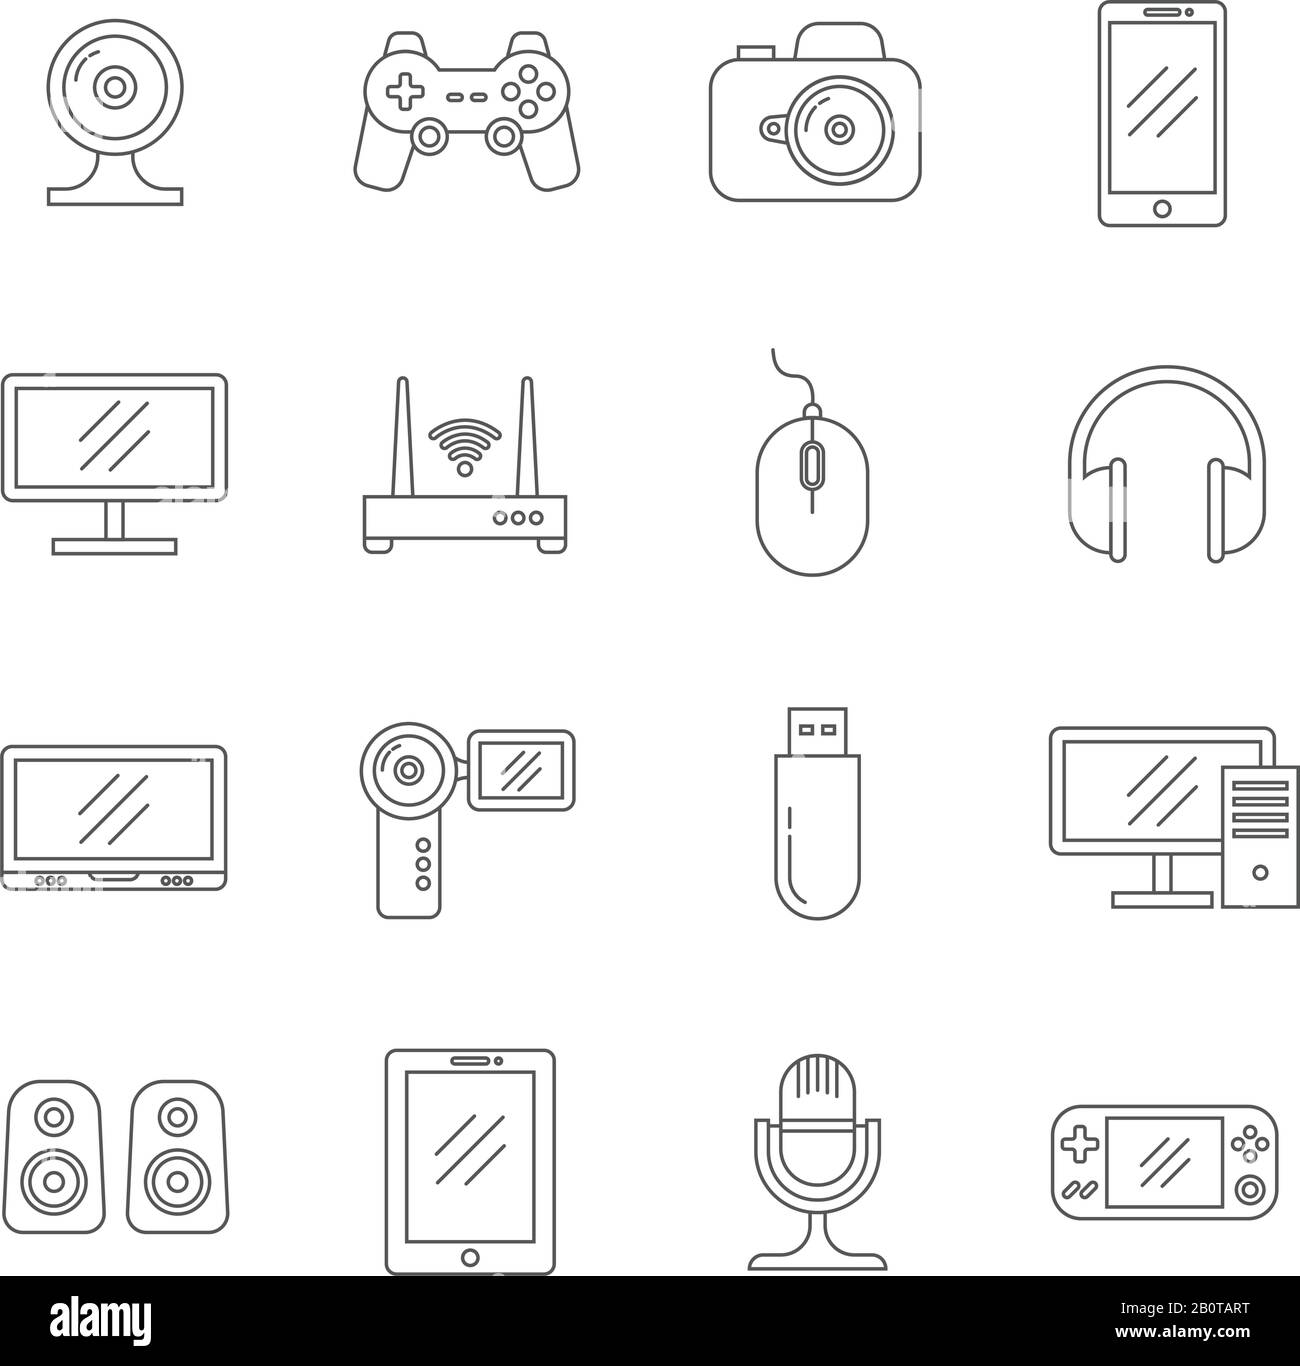 Minianwendungen und Computertechnologie - dünne Linienvektor-Symbole. Technische Geräte des Sets, Abbildung von Kopfhörern und Lautsprechern Geräte Gadgets Stock Vektor